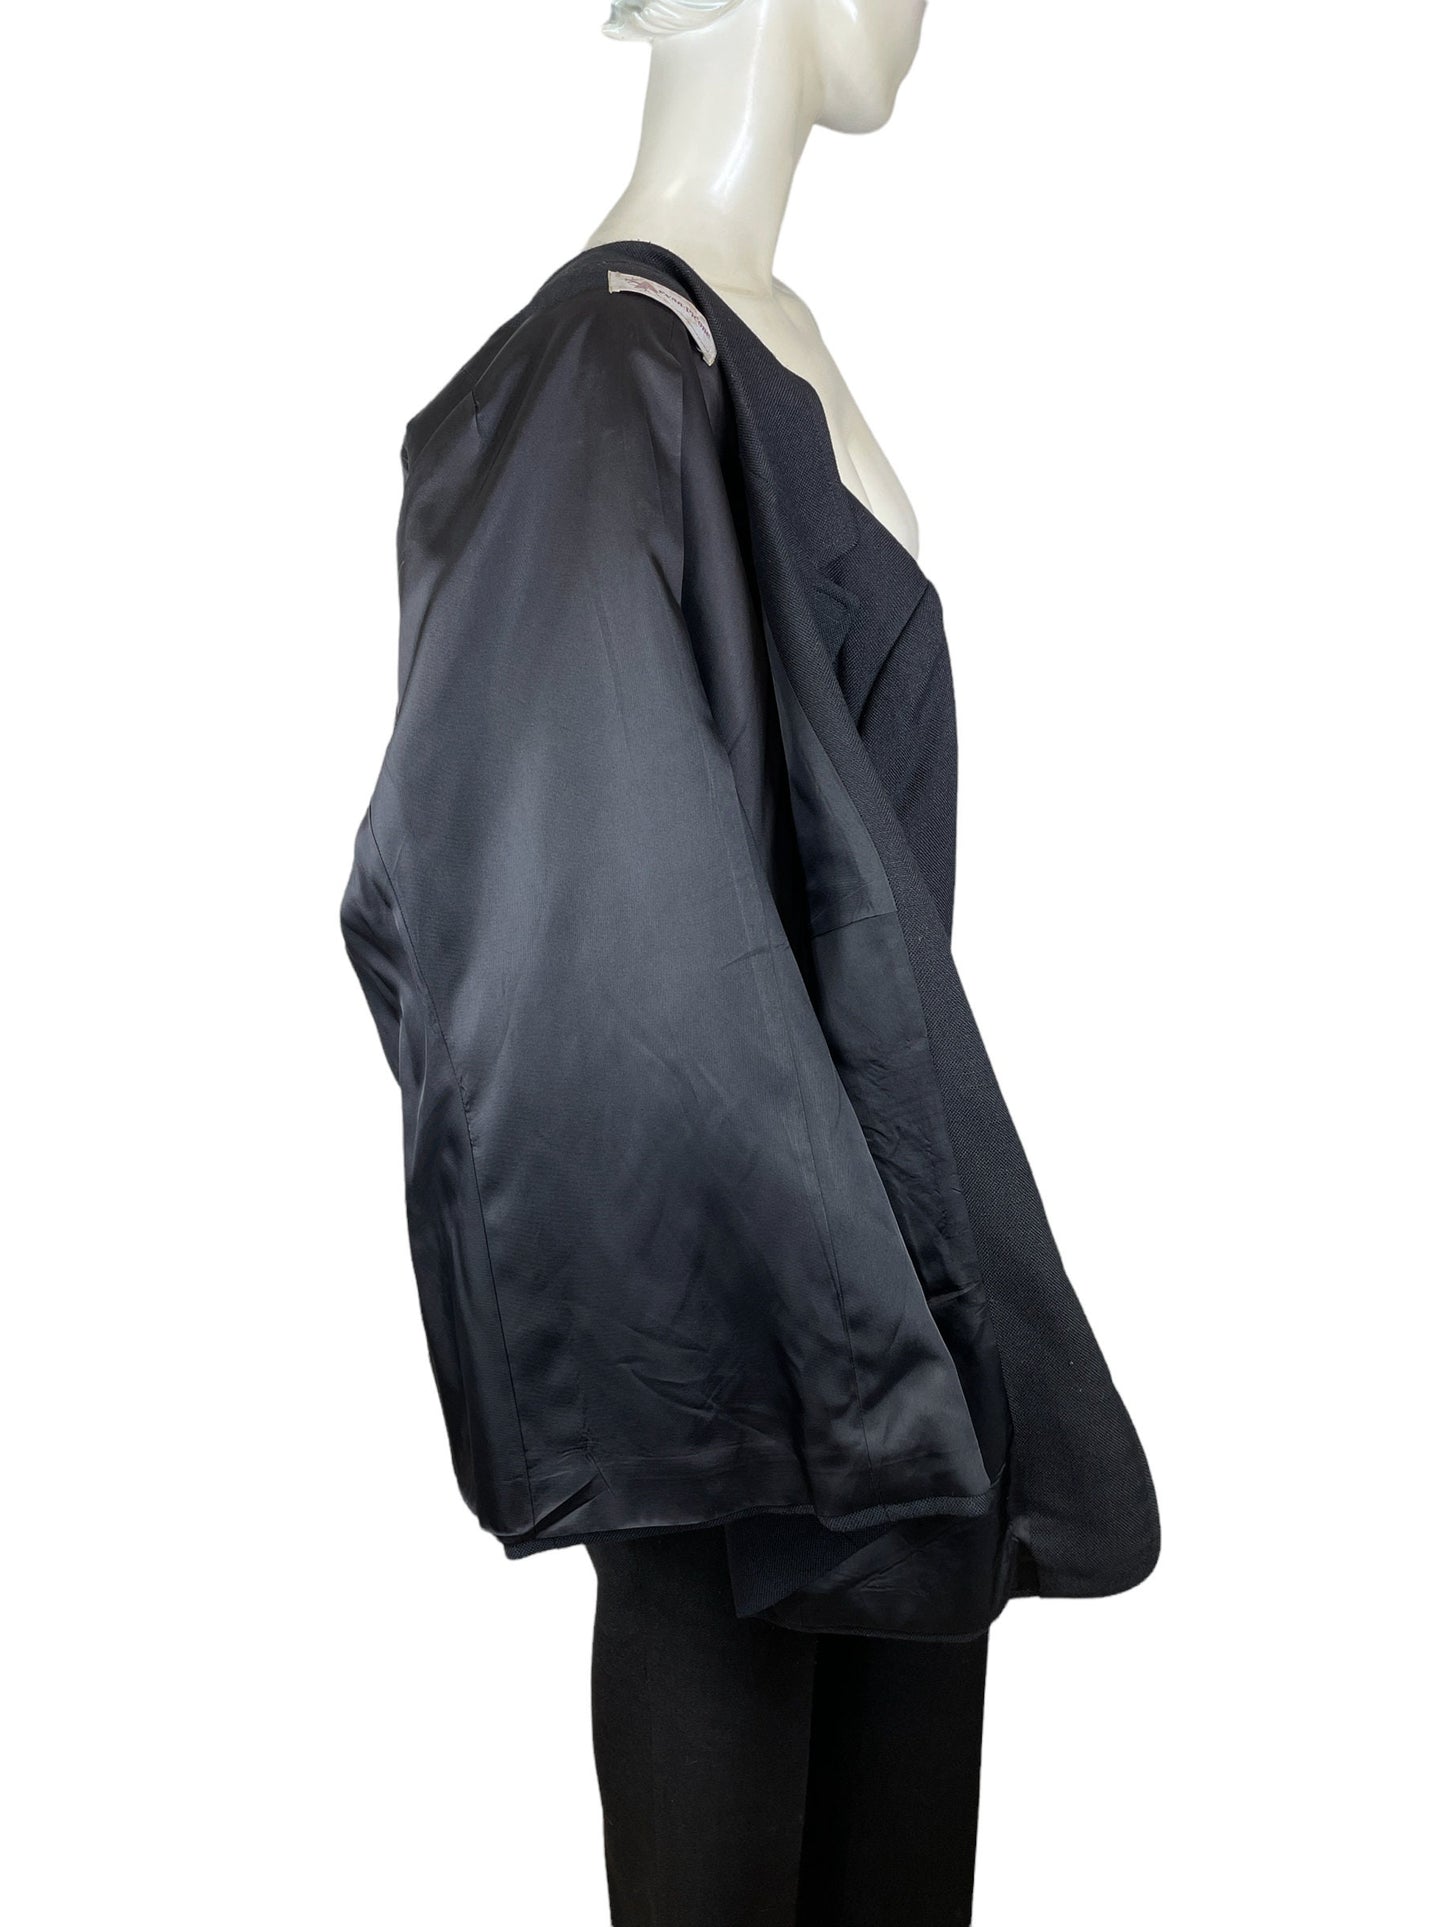 1970s black linen pant suit by Evan-Picone blazer and pants Size M/L